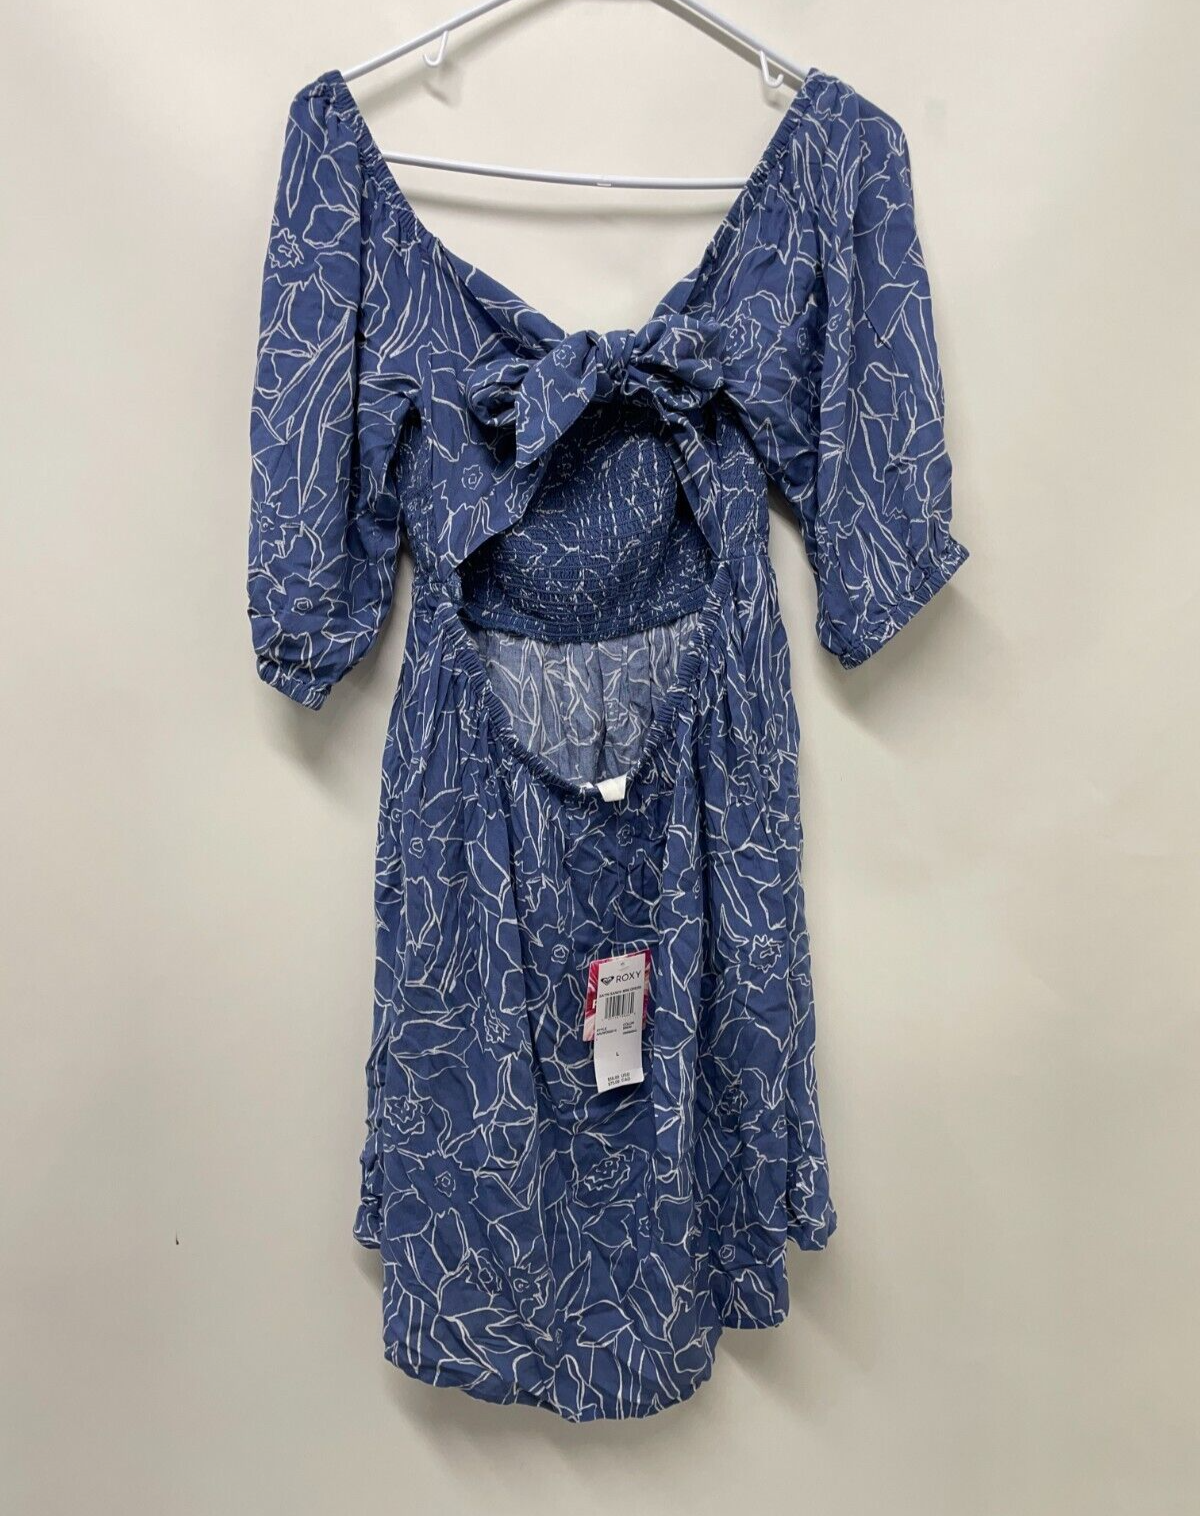 ROXY Women's L Satin Sands Mini Dress Bijou Bue Linear Floral Puff Sleeves NWT